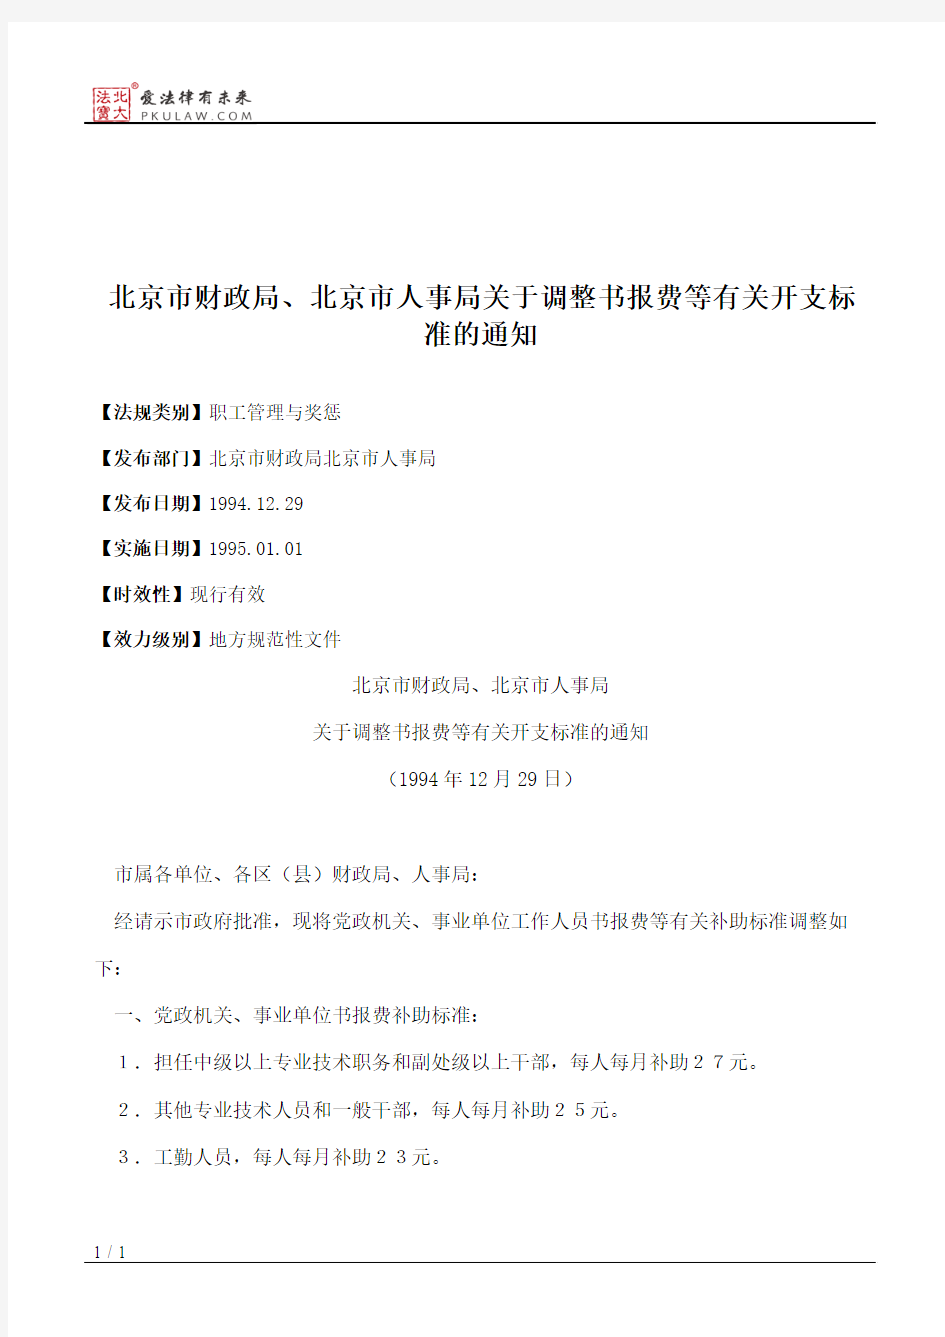 北京市财政局、北京市人事局关于调整书报费等有关开支标准的通知